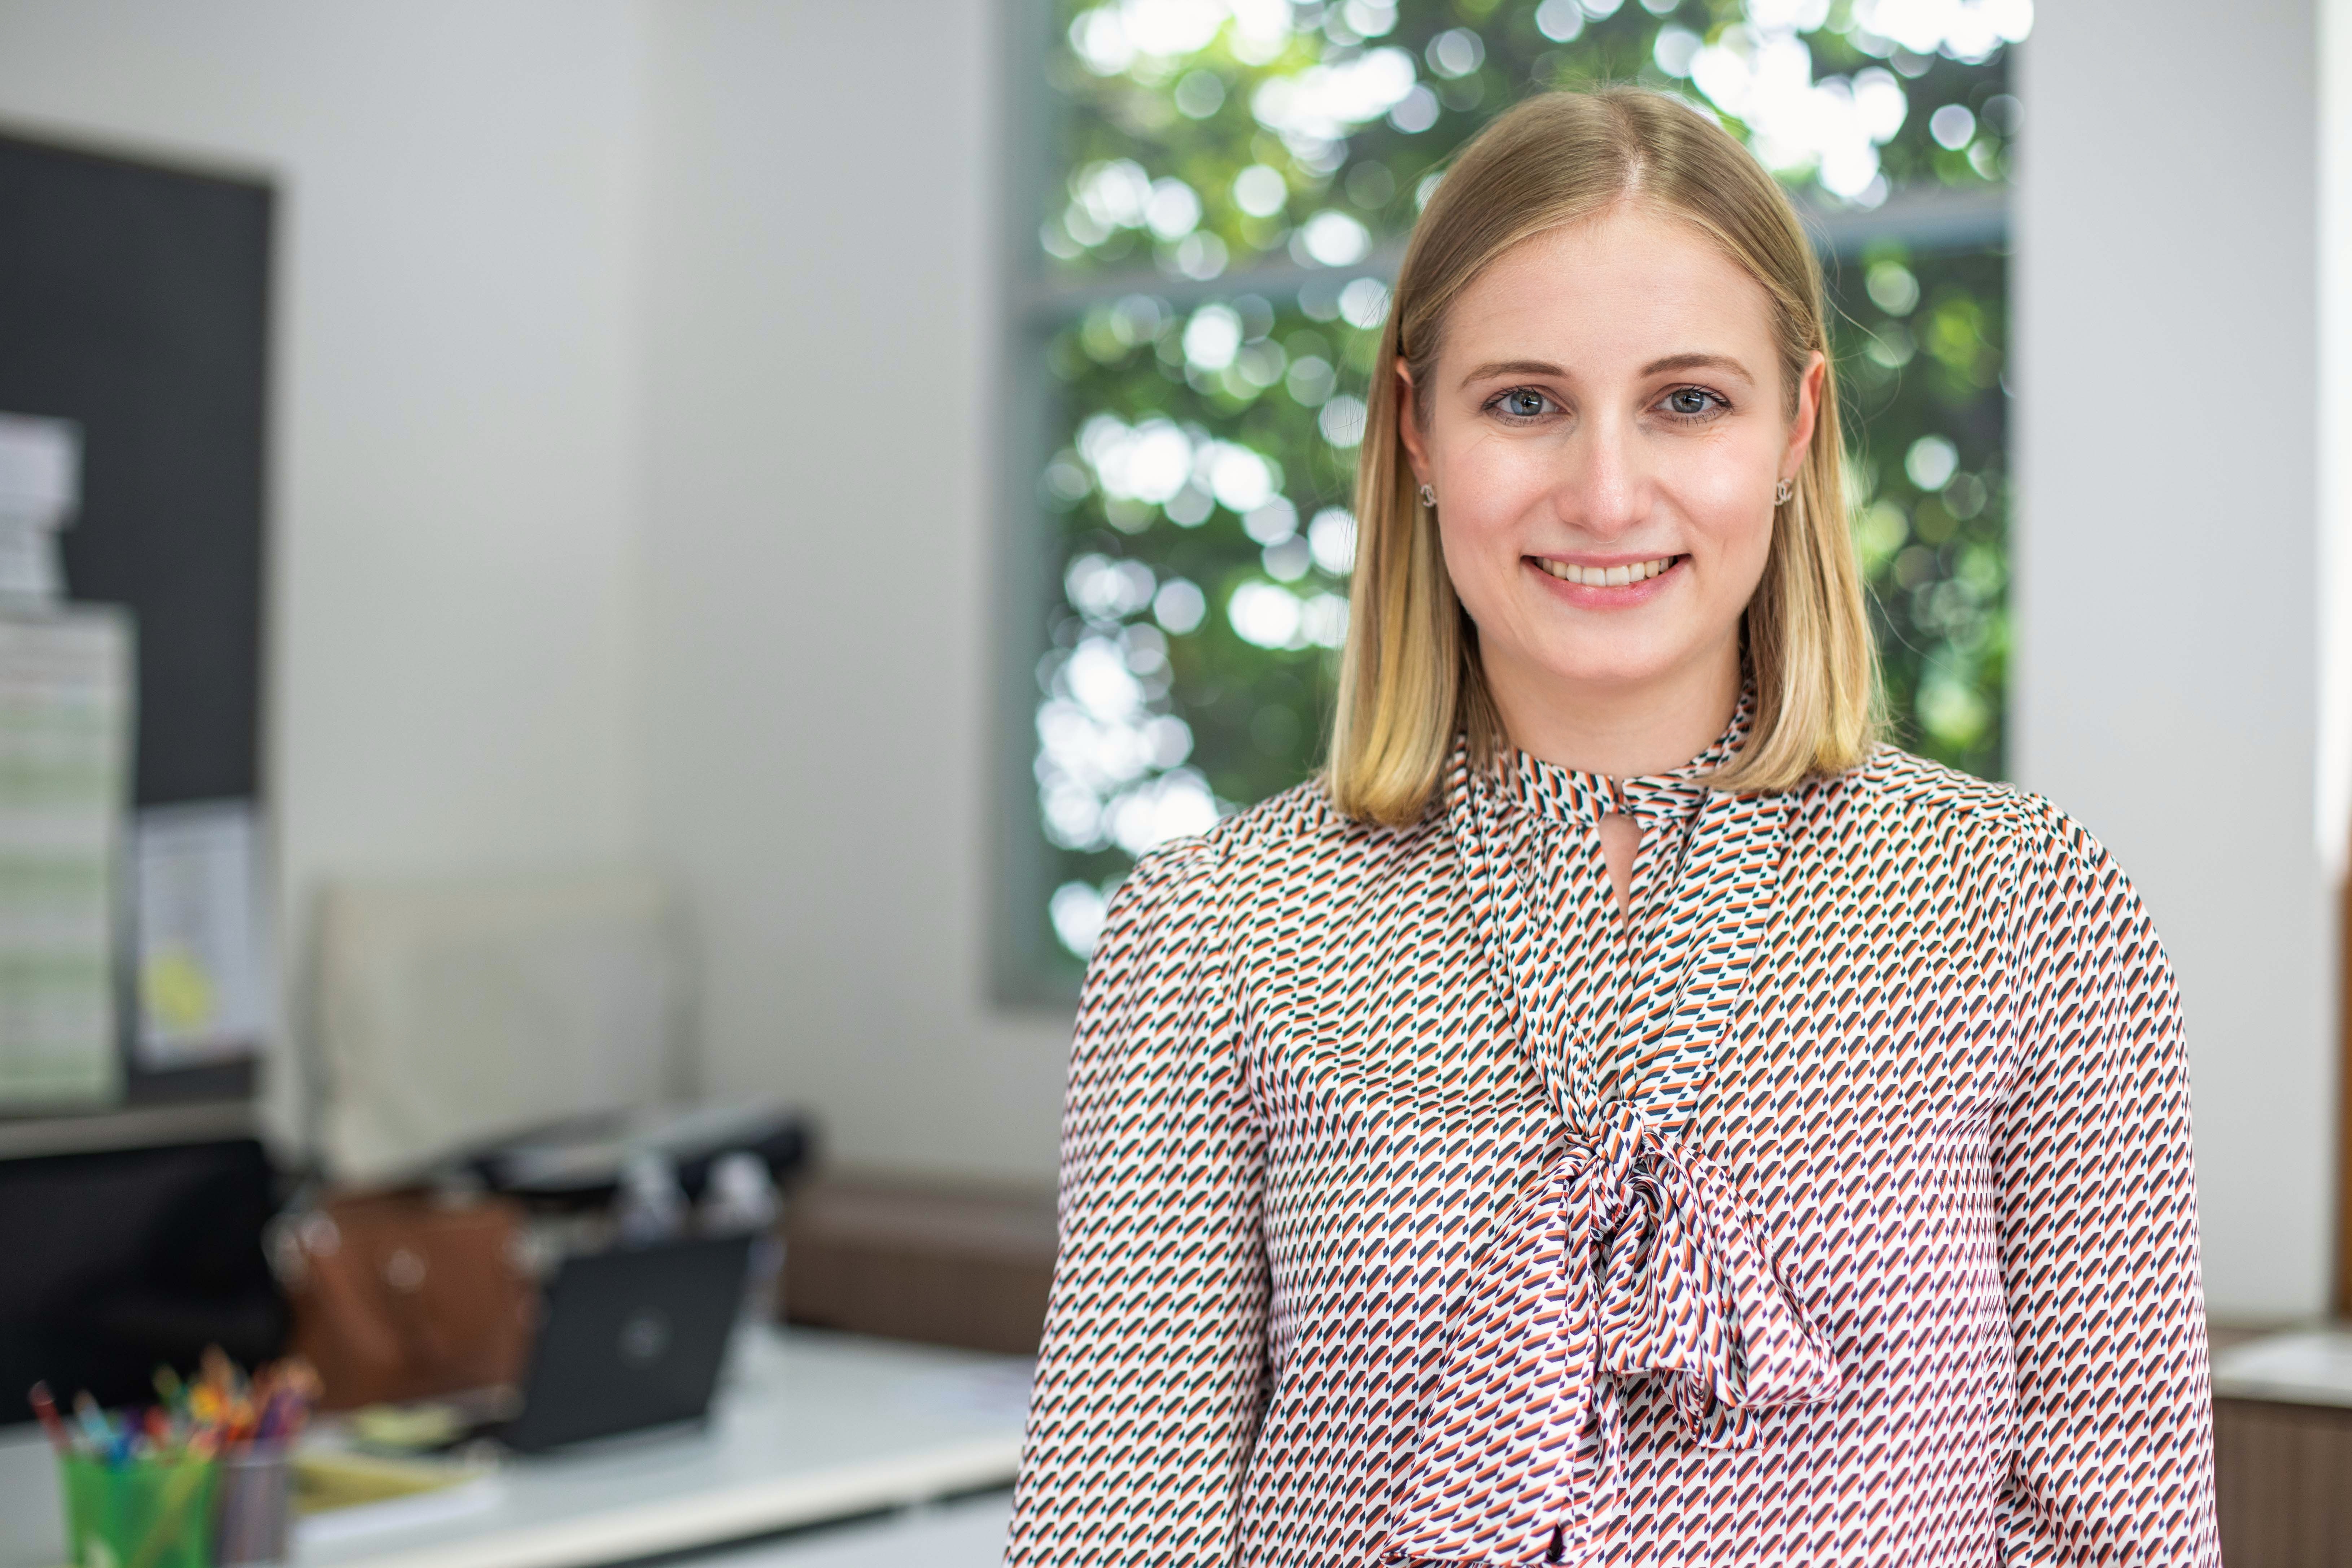 Meet the New Teacher: Anna Lawlor